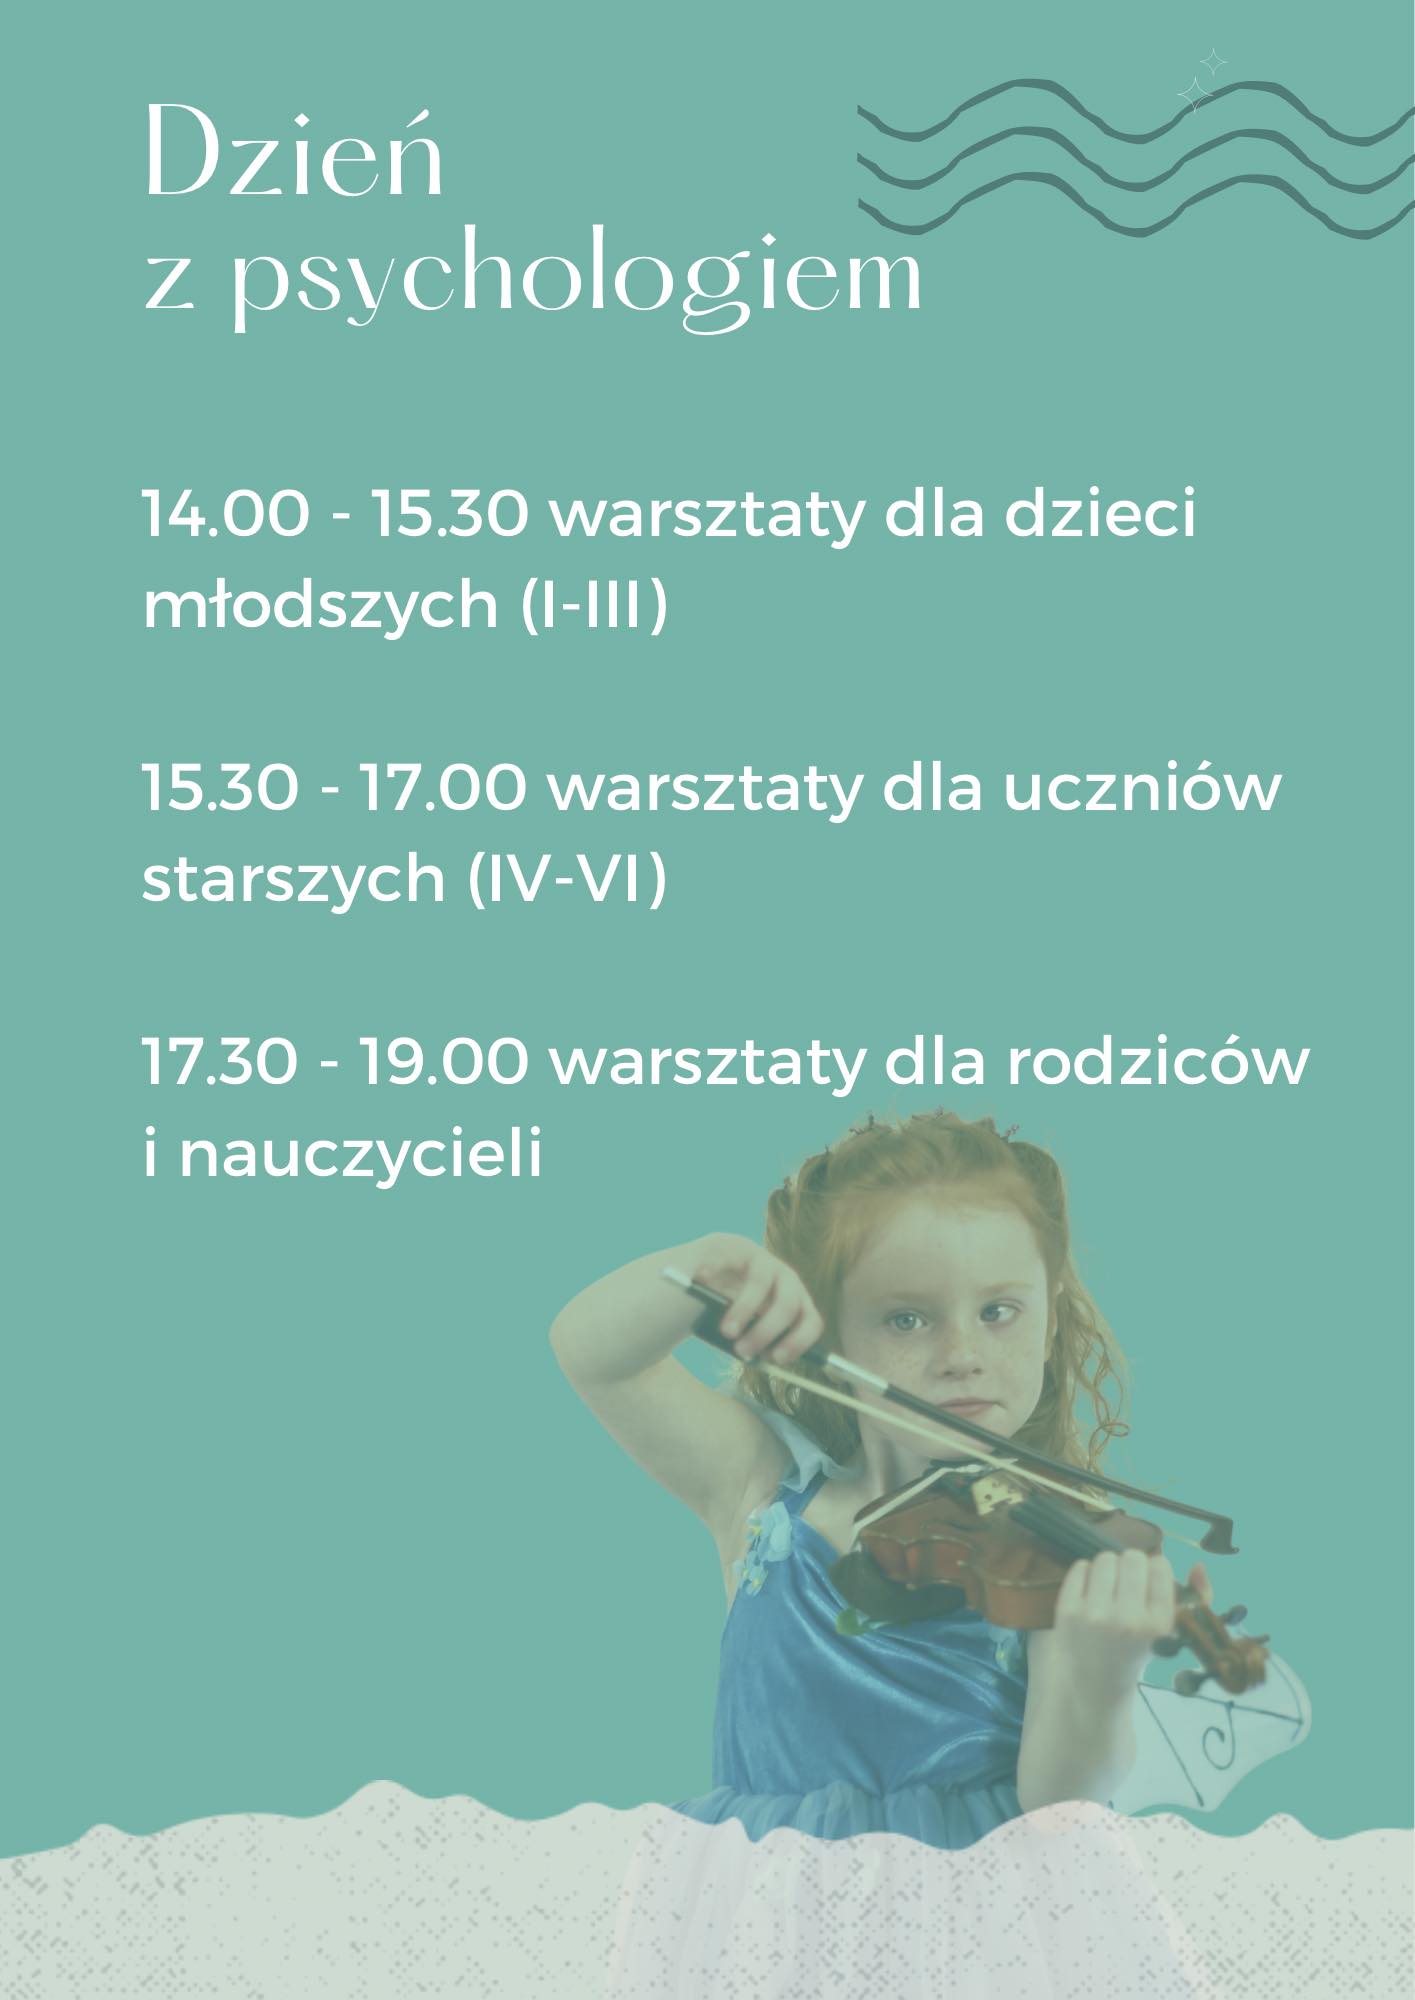 Plakat ze zdjęciem dziewczynki grającej na skrzypcach na zielonym tle